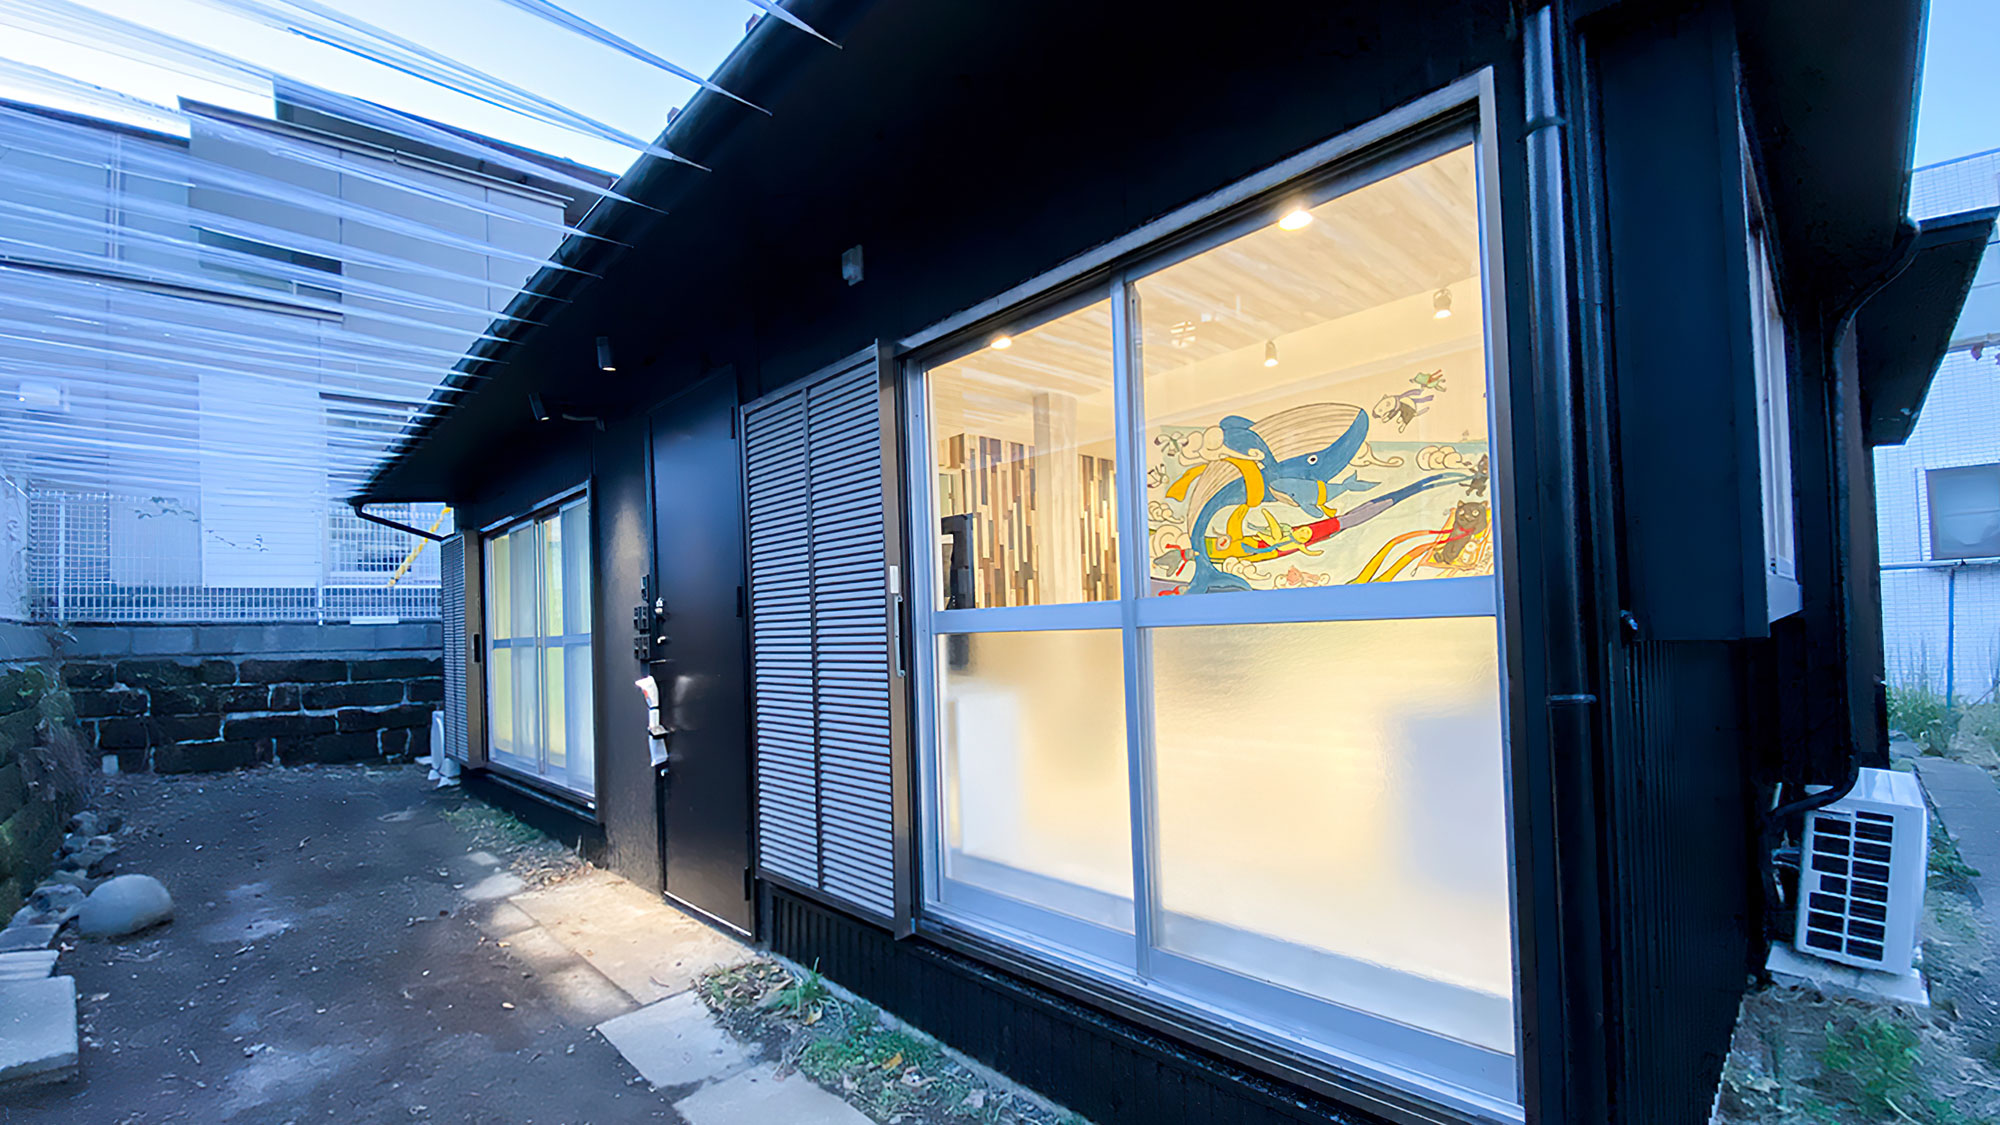 ・【OOBACOⅣ】横浜在住のアーティストとコラボした一軒家